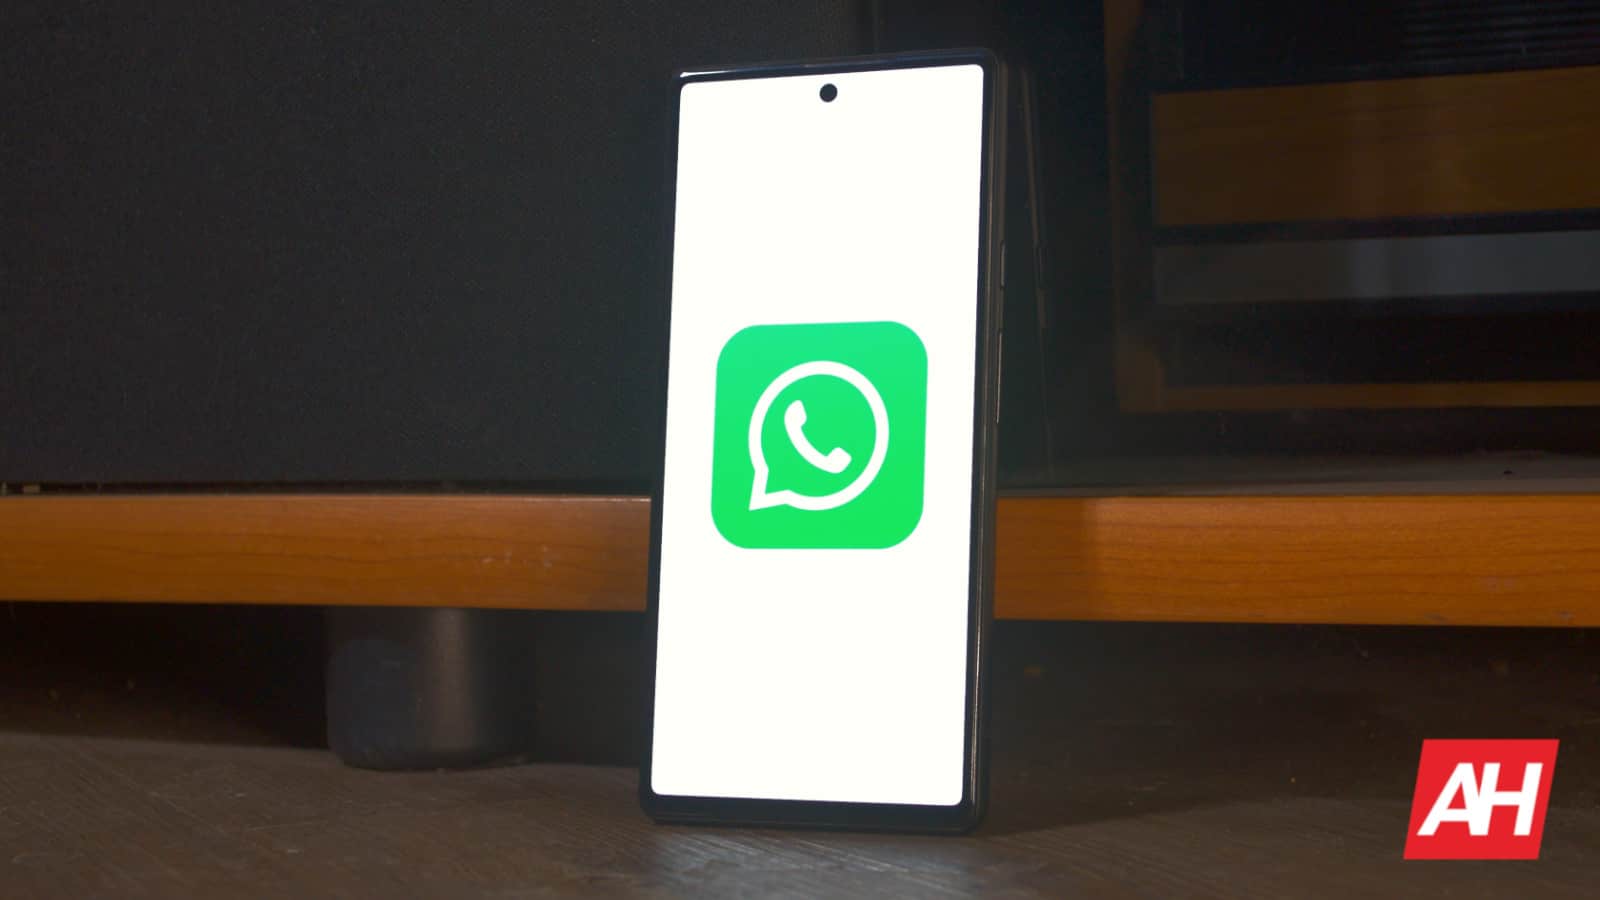 WhatsApp pronto permitirá mensajería multiplataforma en una pestaña separada